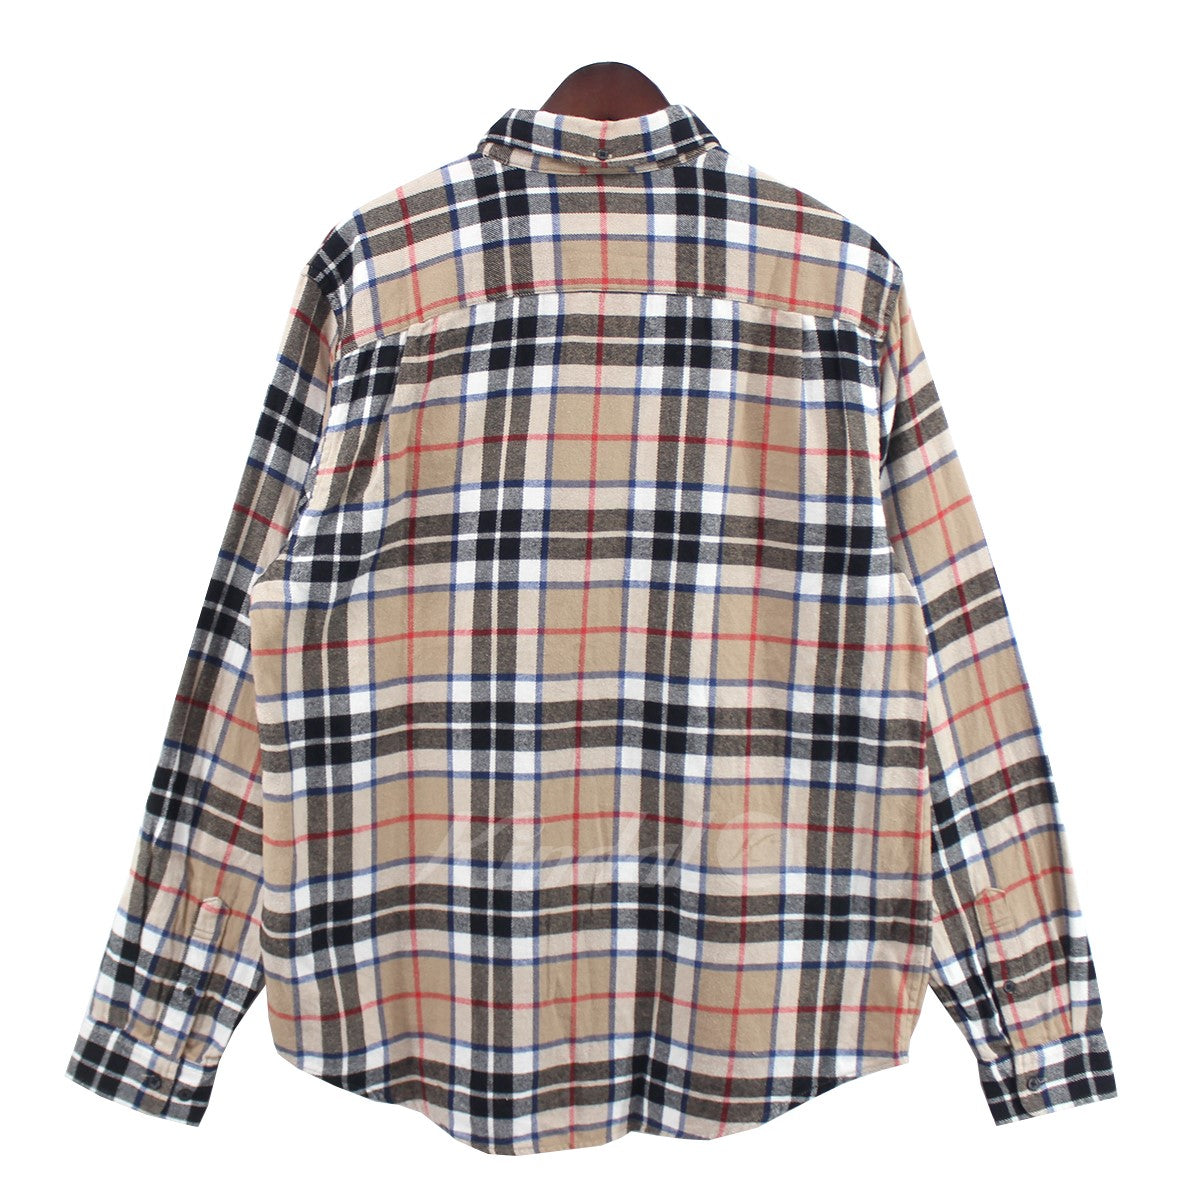 SUPREME(シュプリーム) 18AW Tartan Flannel Shirt タータン フランネル チェック シャツ